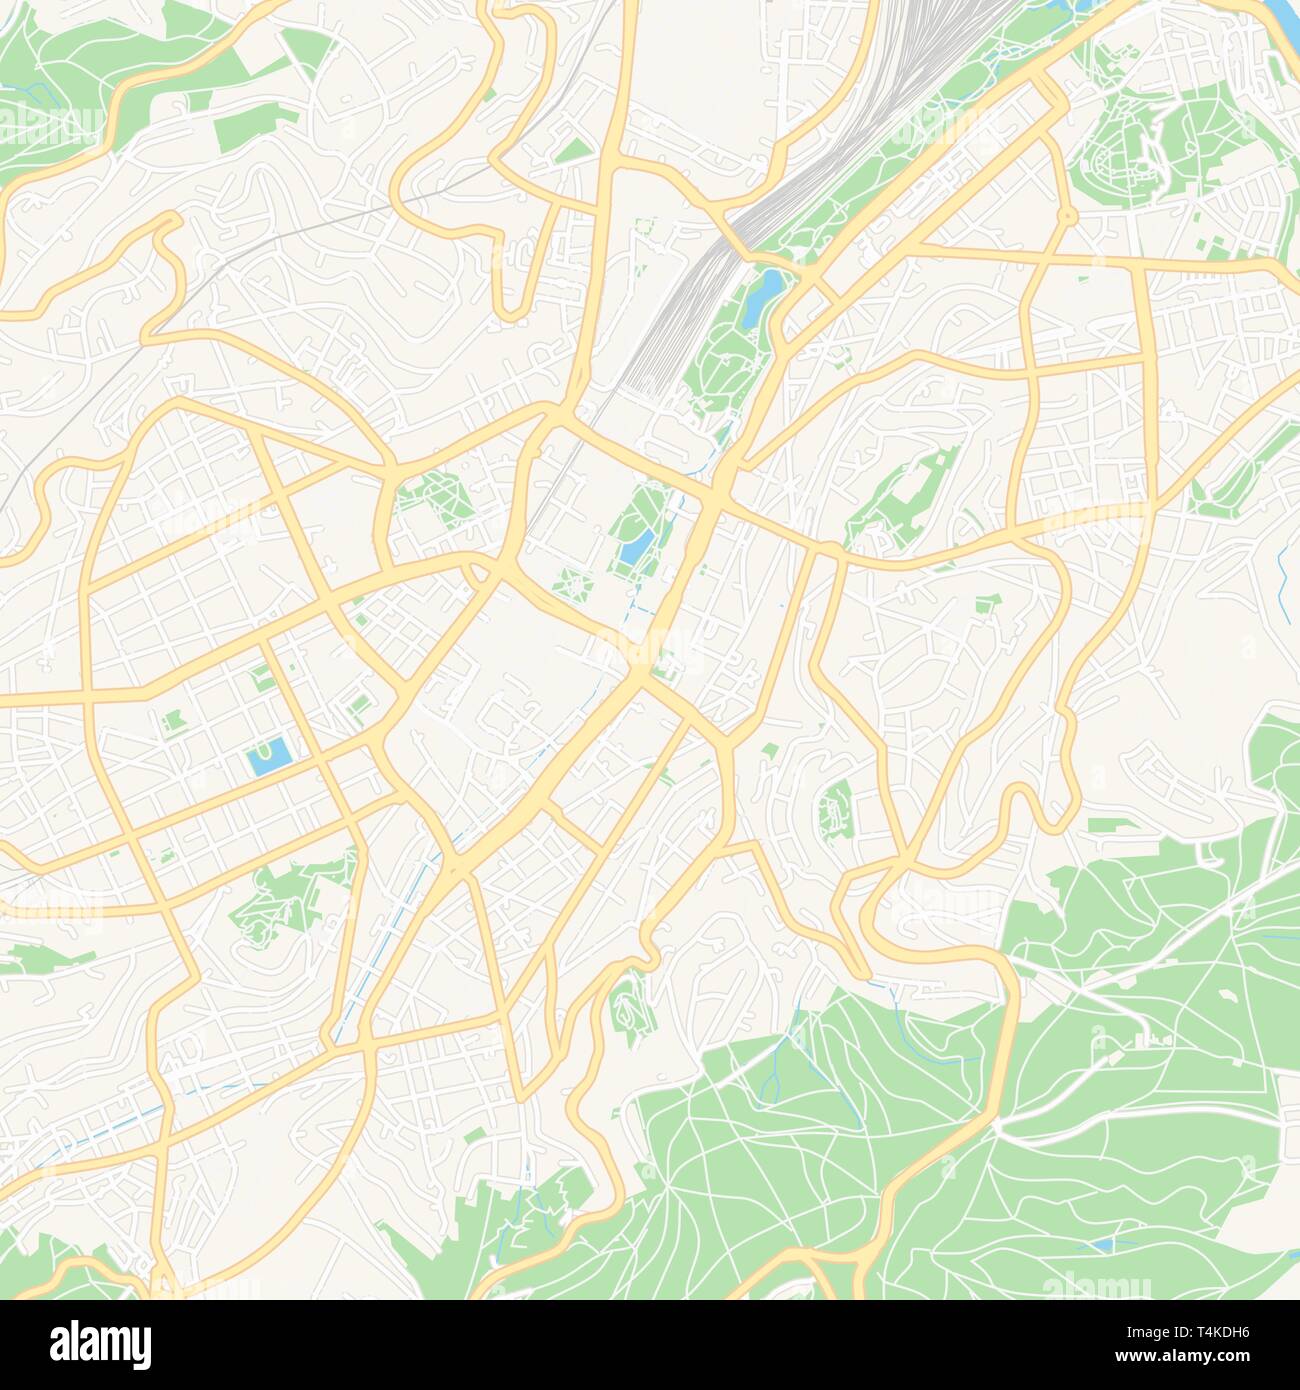 Druckbare Karte von Stuttgart, Deutschland mit Haupt- und Nebenstraßen und größere Bahnen. Diese Karte ist sorgfältig für Routing und Inverkehrbringen Champagnerkelch konzipiert Stock Vektor